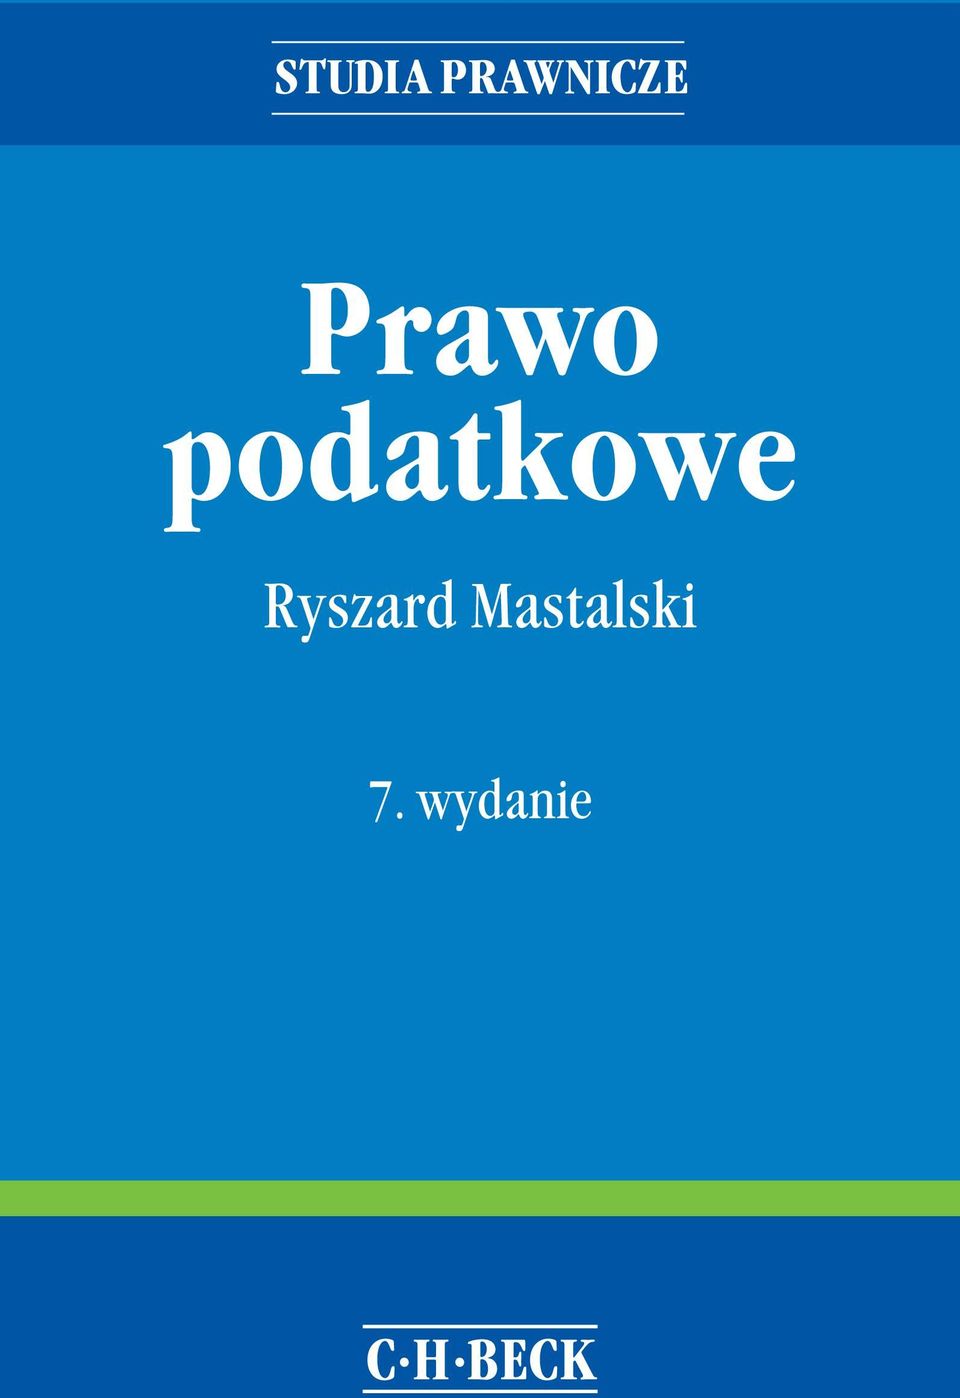 Ryszard Mastalski